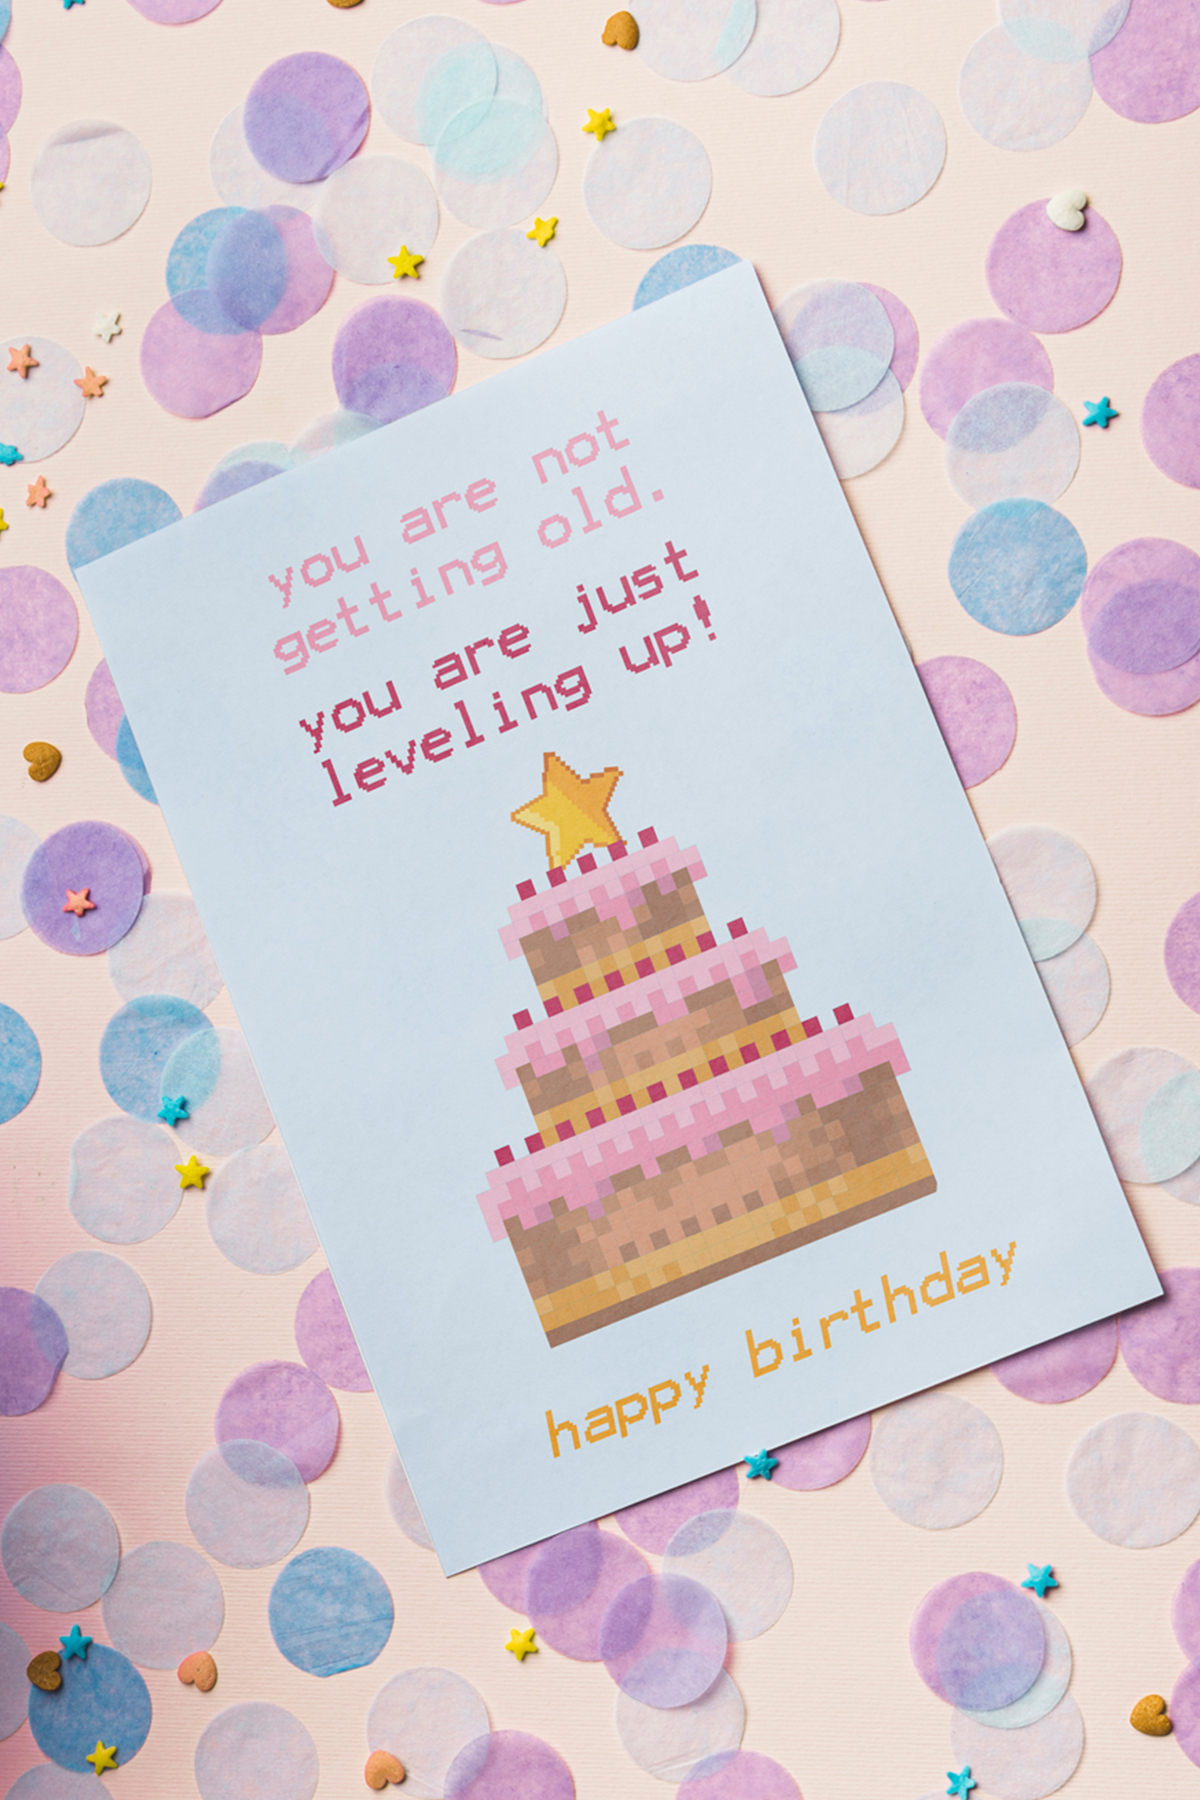 10 Coole Geburtstagskarten Zum Ausdrucken | Free Printable innen Geburtstagskarten Zum Ausdrucken Kostenlos